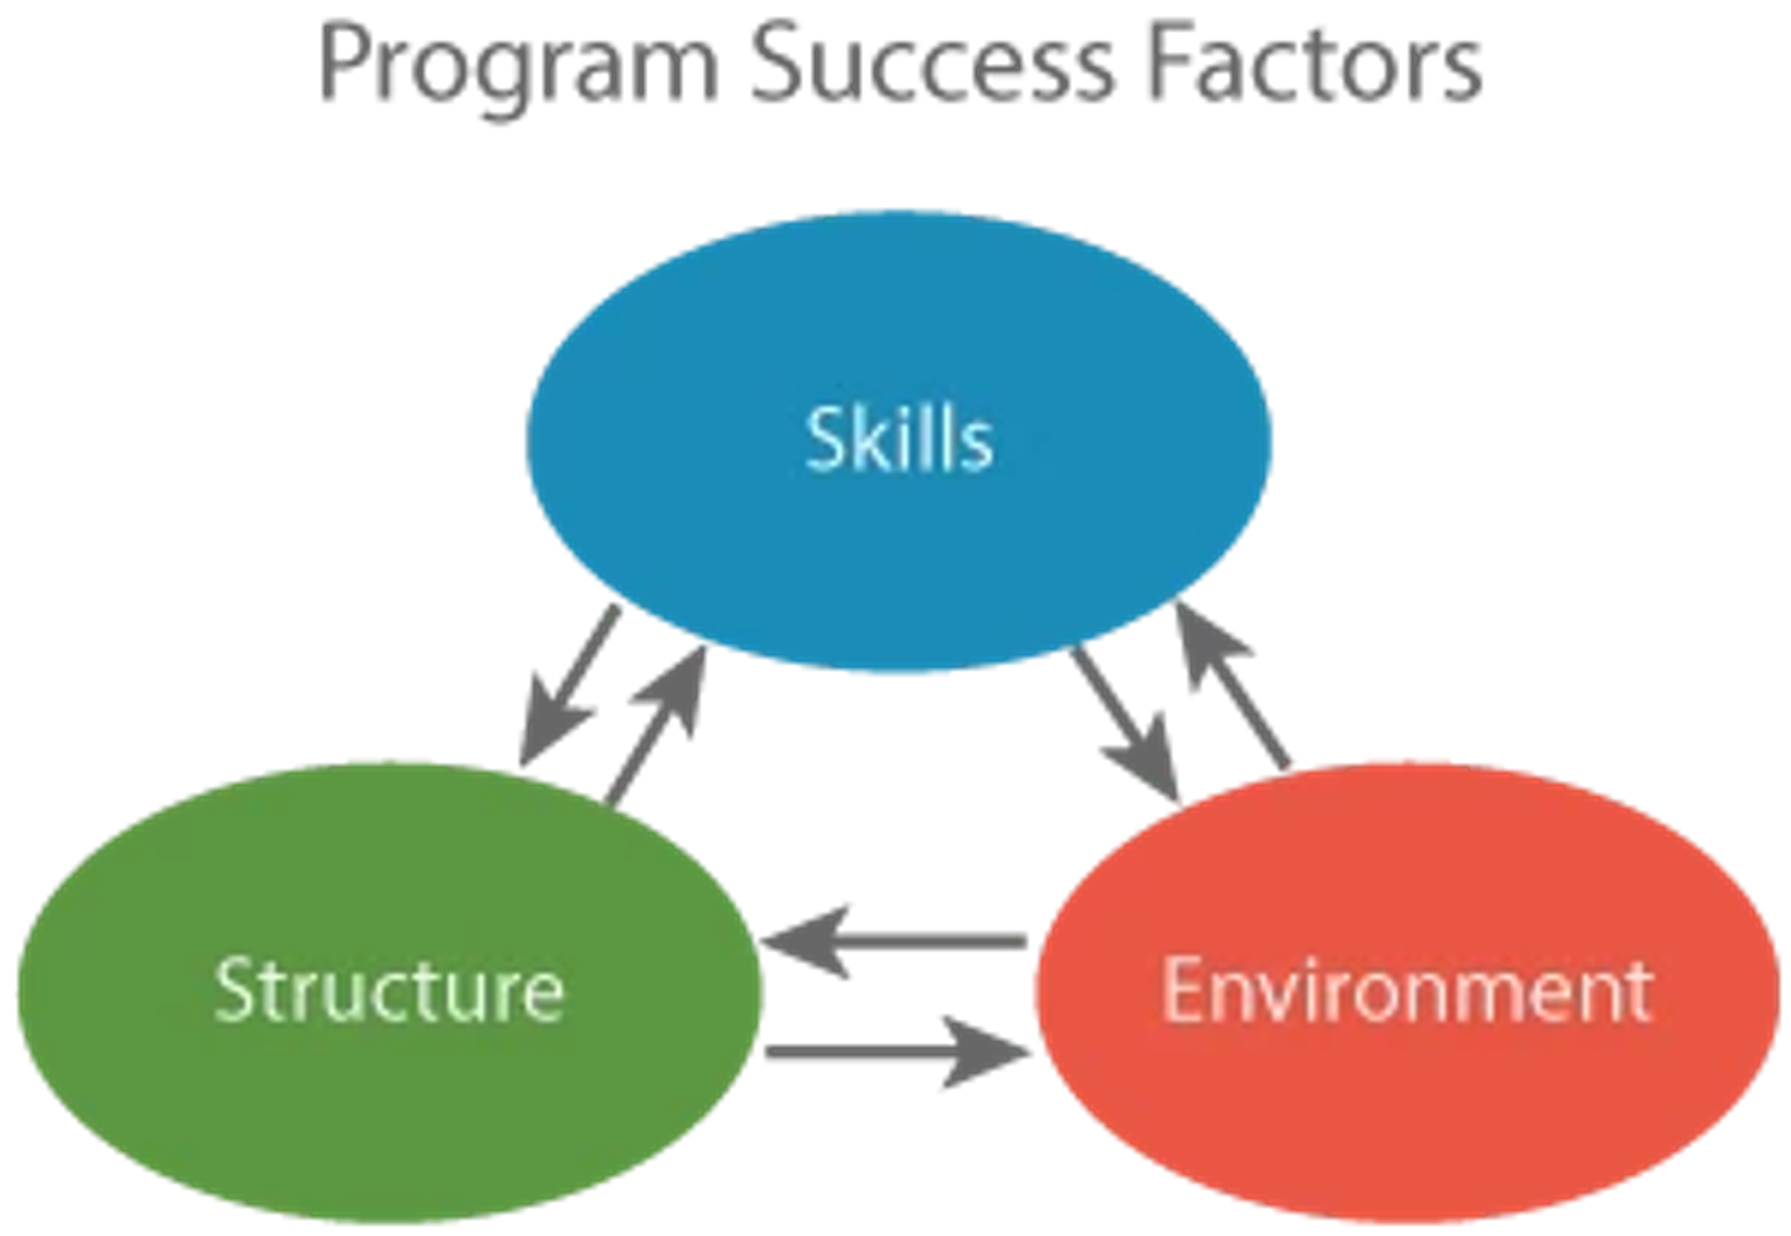 Program Success Factors Diagram